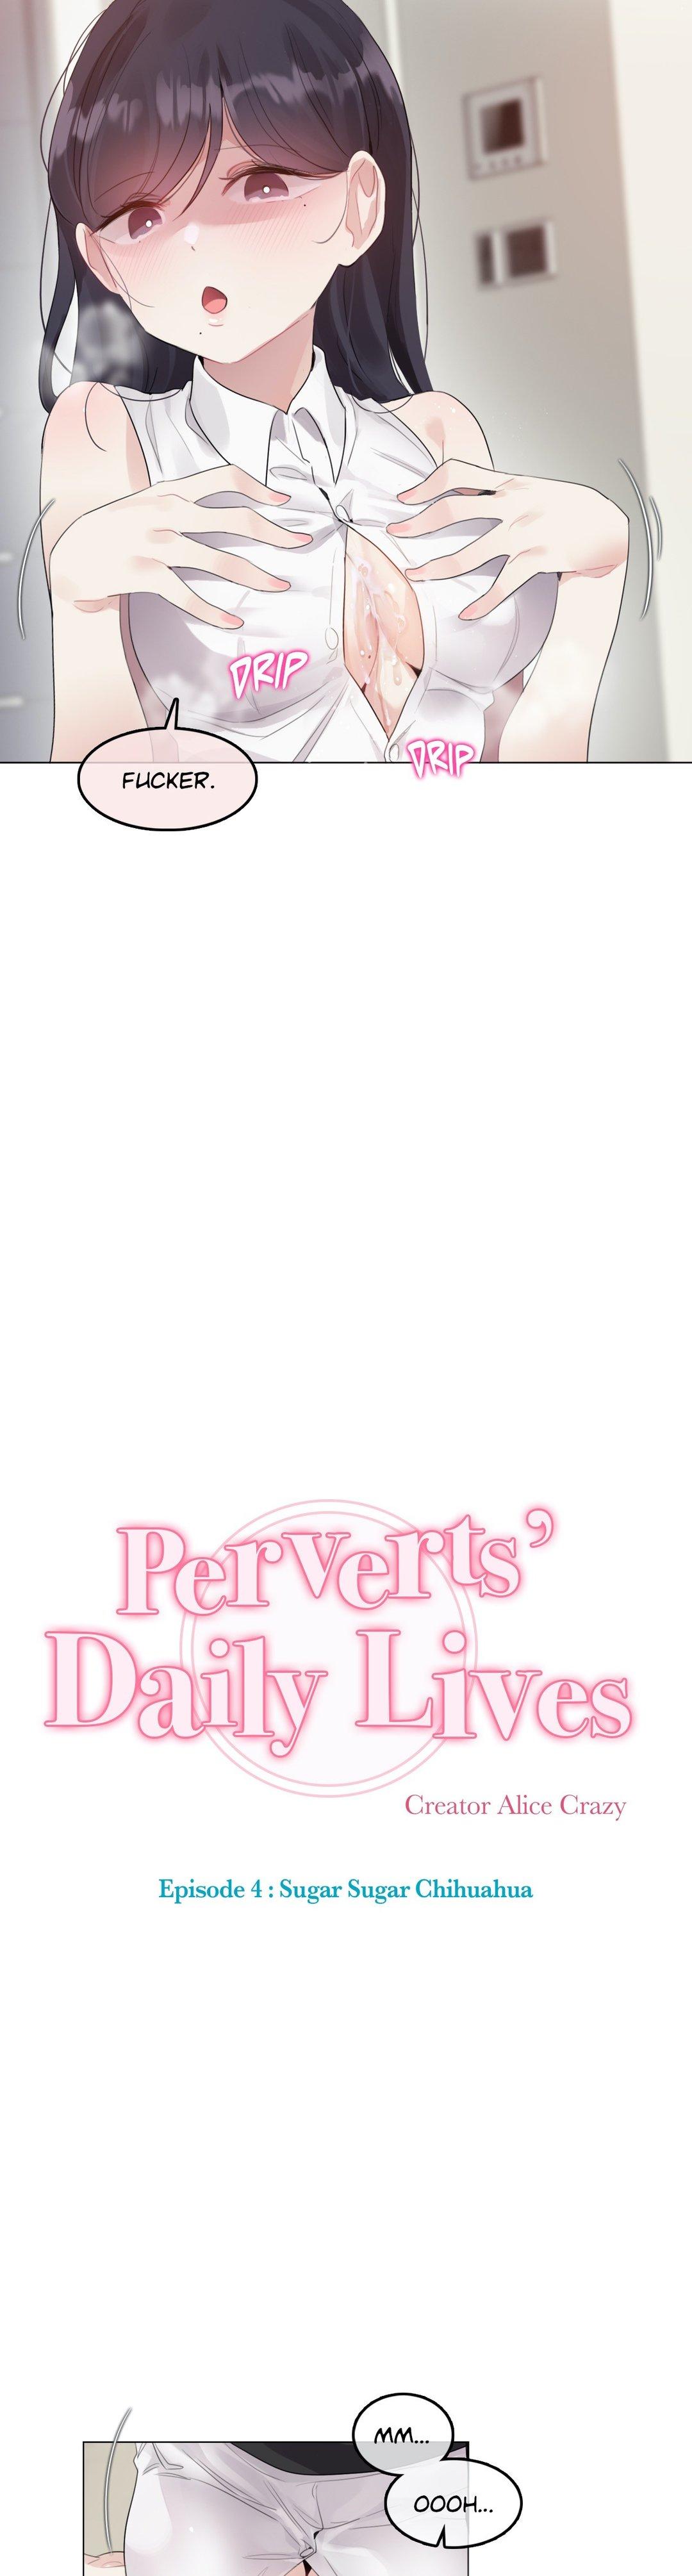 Perverts' Daily Lives Episode 4: Sugar Sugar Chihuahua 184